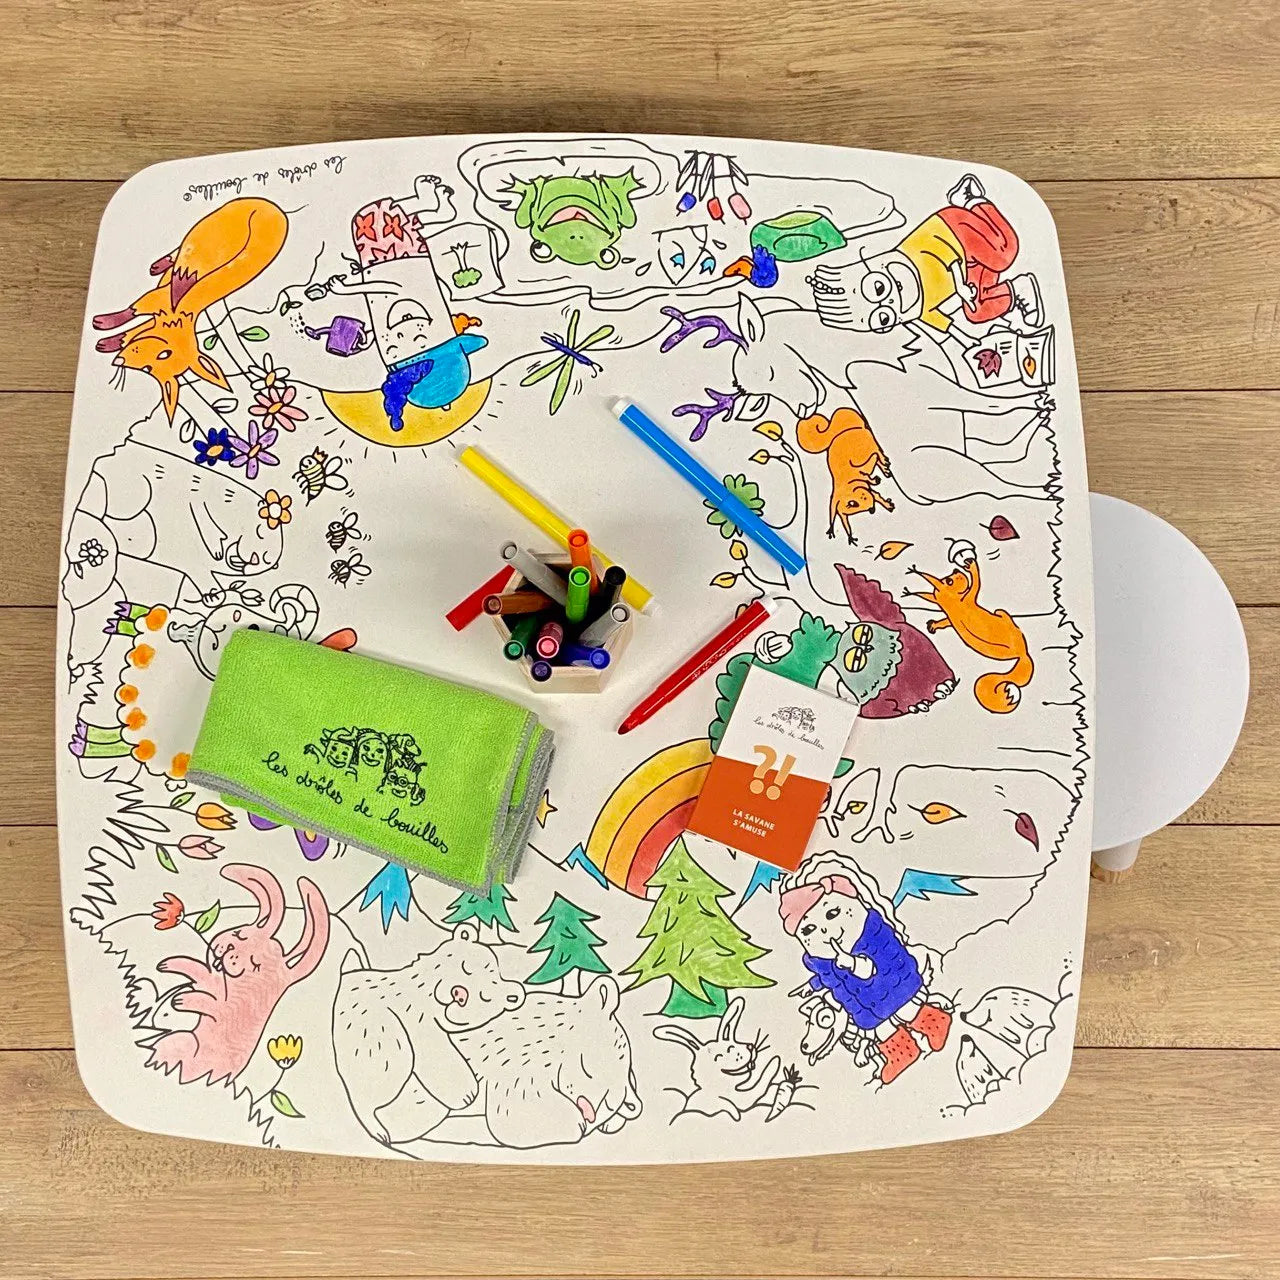 Décoration enfant, table de coloriage drôle de bouilles avec tabourets et feutres